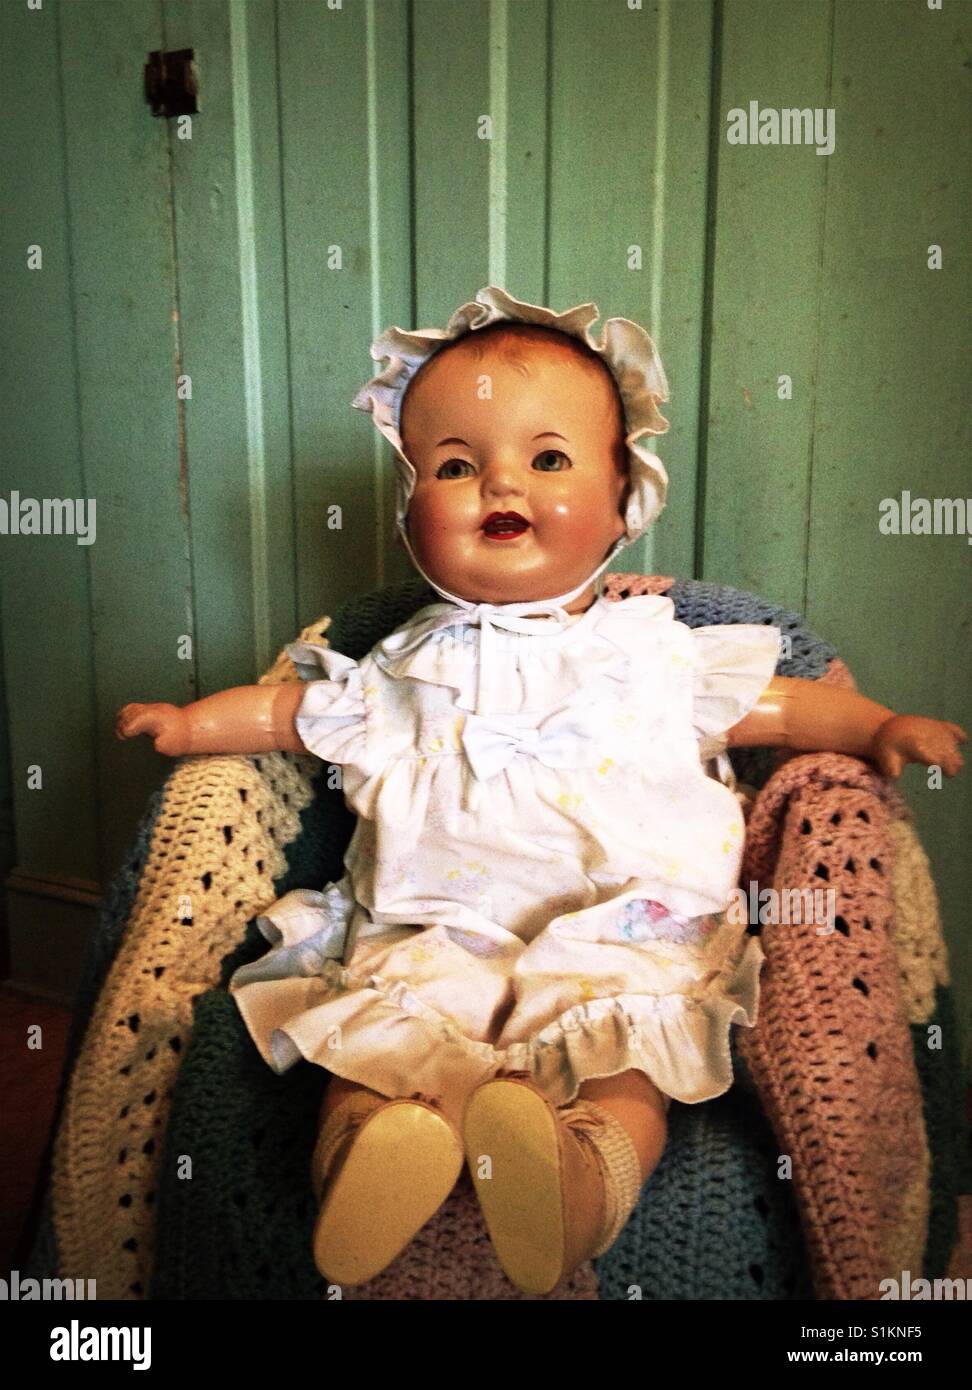 Hallo, Doris! Doris ist eine Zusammensetzung Puppe in einem afghanischen bedeckt Stuhl durch einen grünen Schrank Tür gestellt Stockfoto